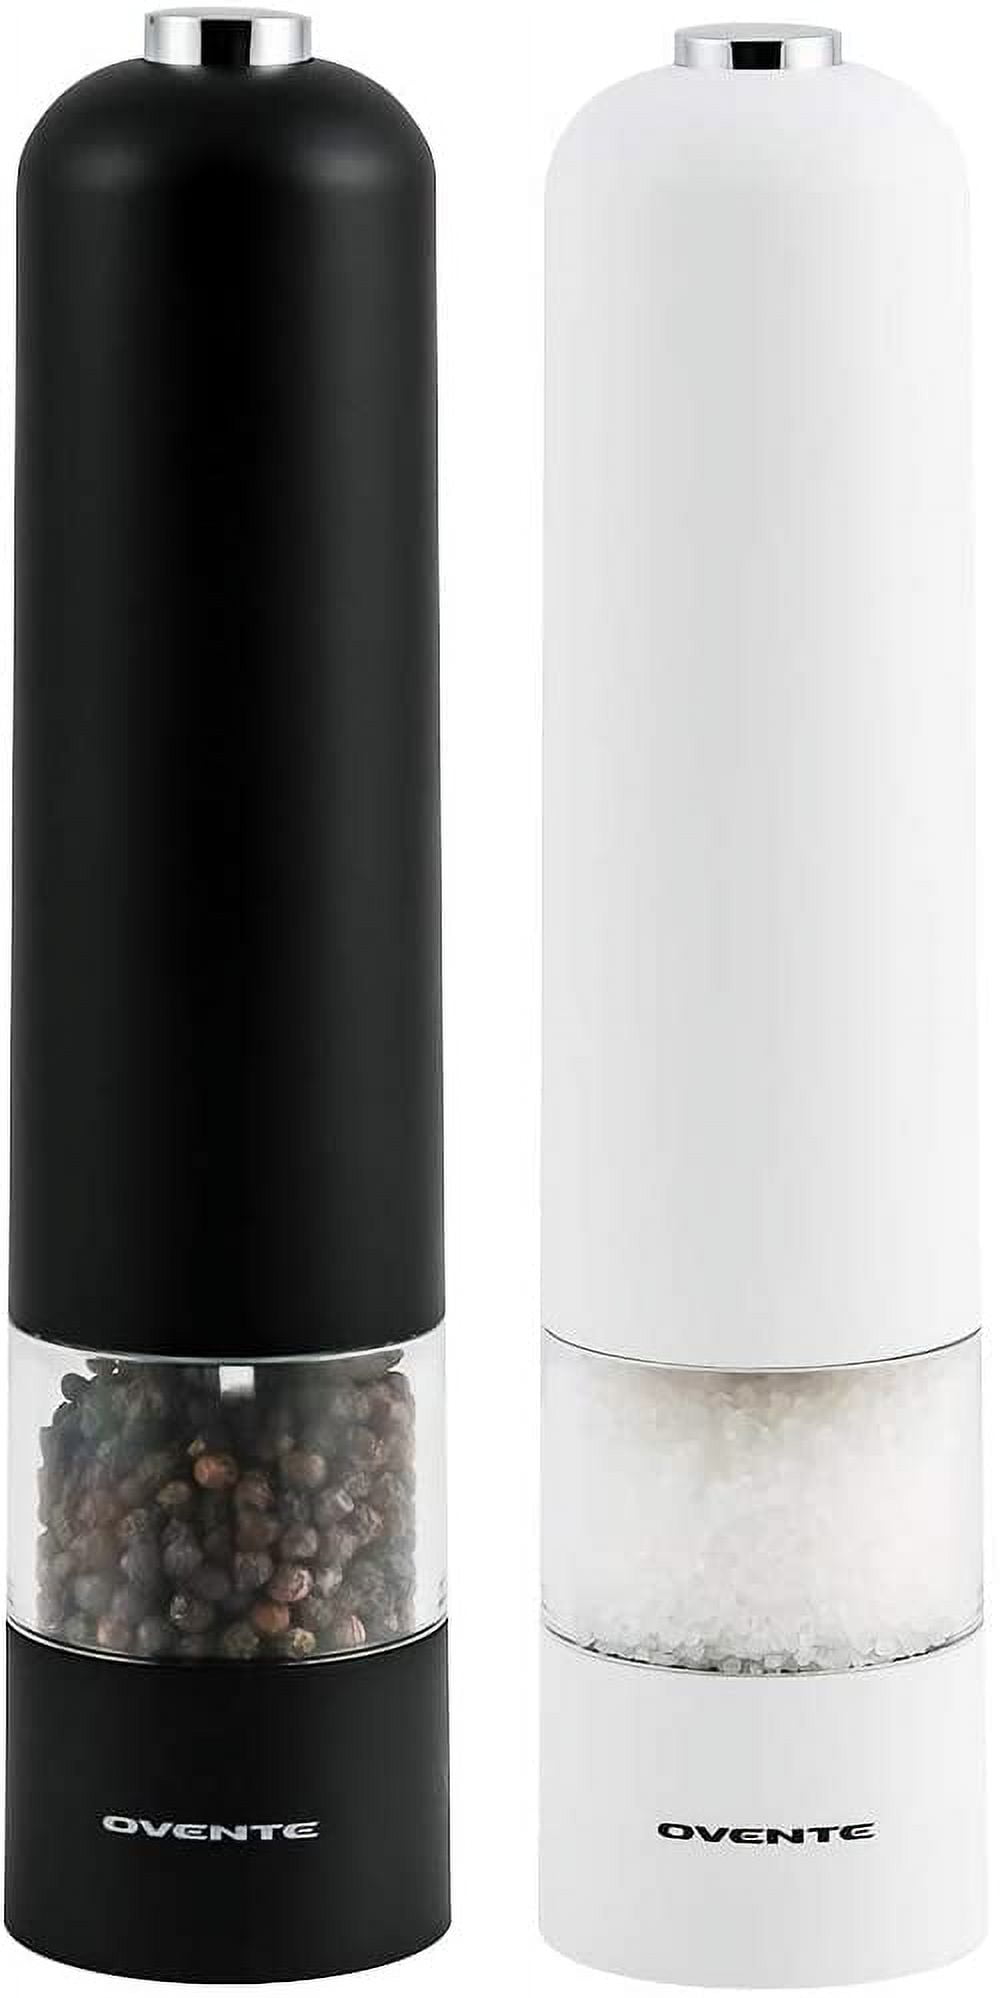 Ovente SPD1125 Electric Salt and Pepper Grinder Set with Ceramic